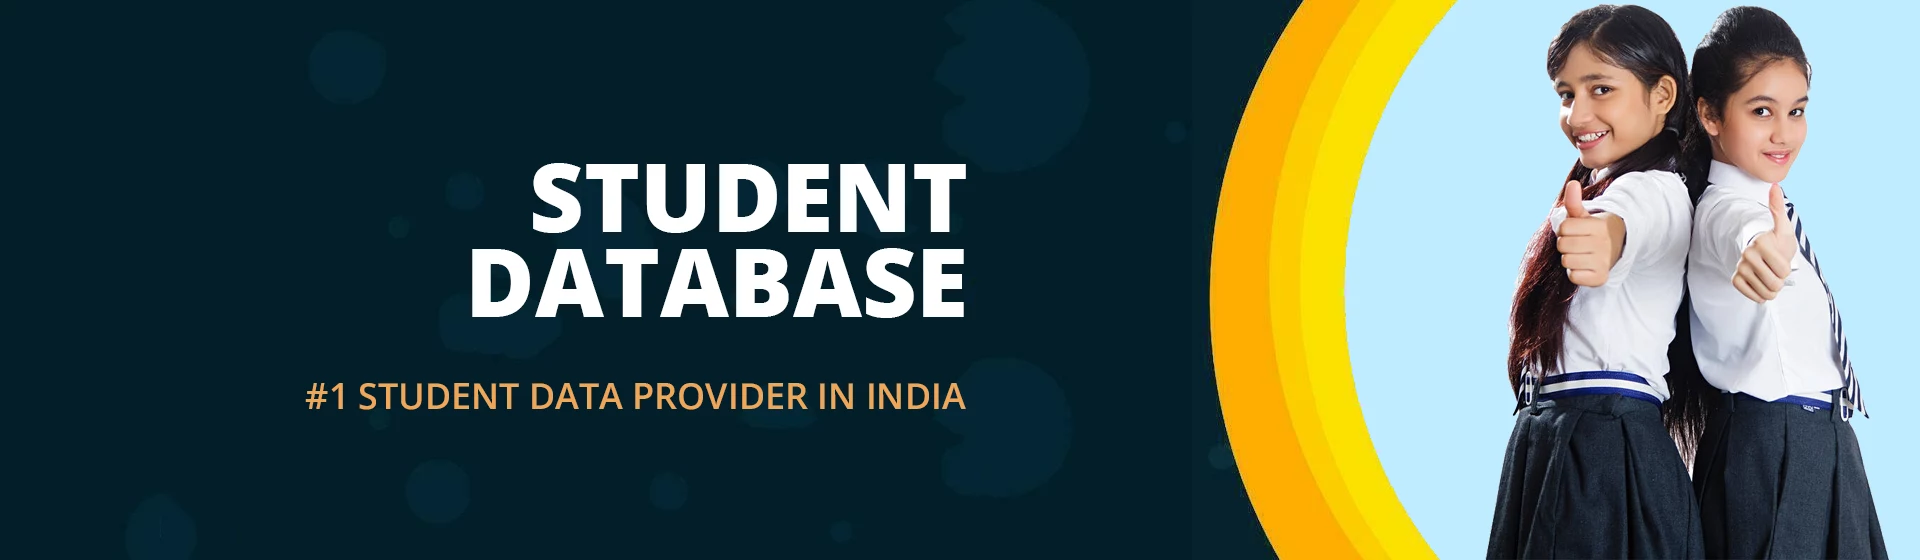 Student Database Banner 1